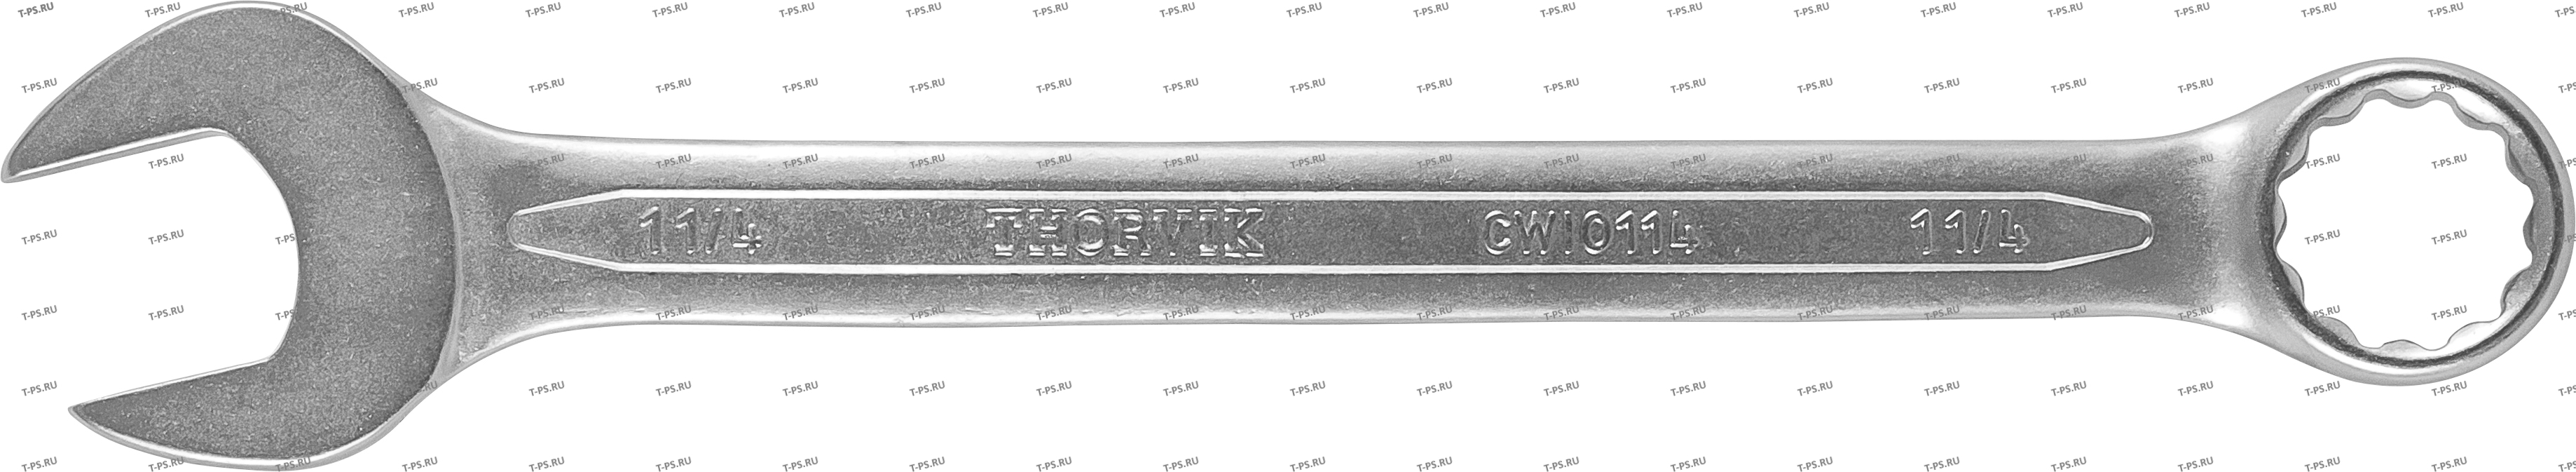 CWI1316 Ключ гаечный комбинированный дюймовый, 1316